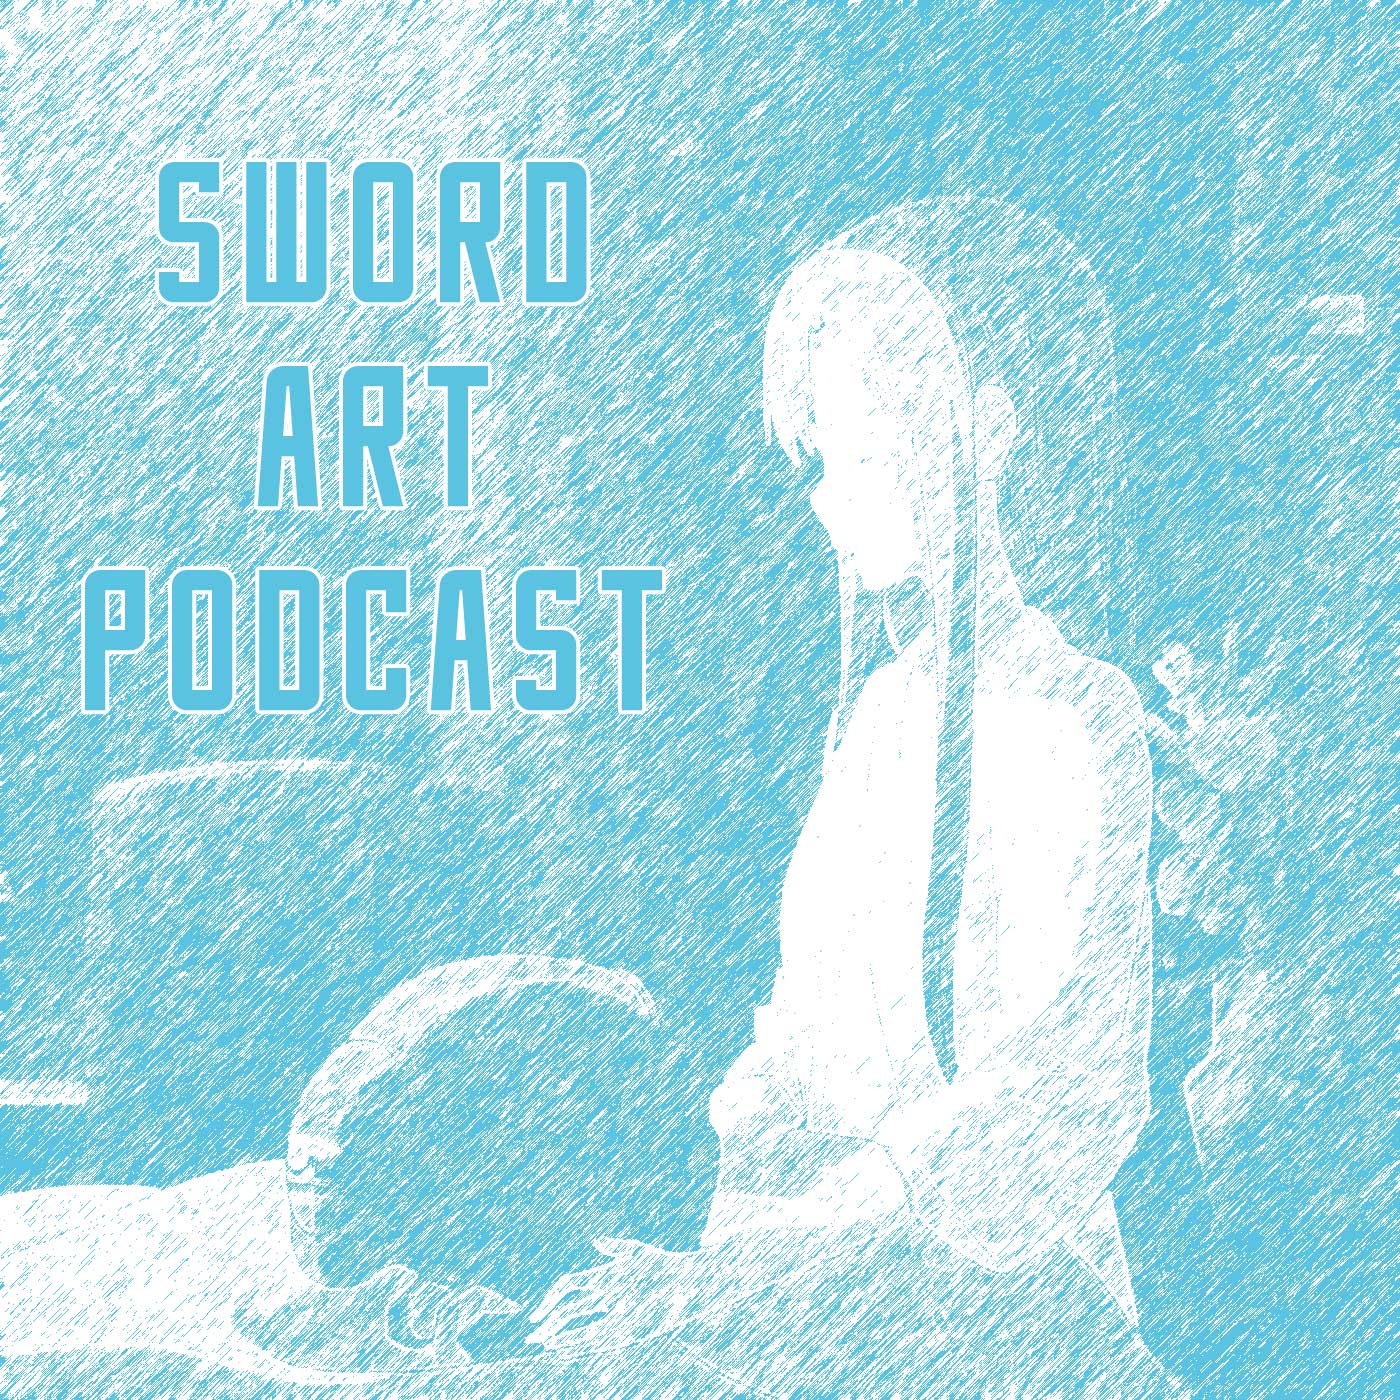 Sword Art Podcast - Season 5 - Epsiode 2